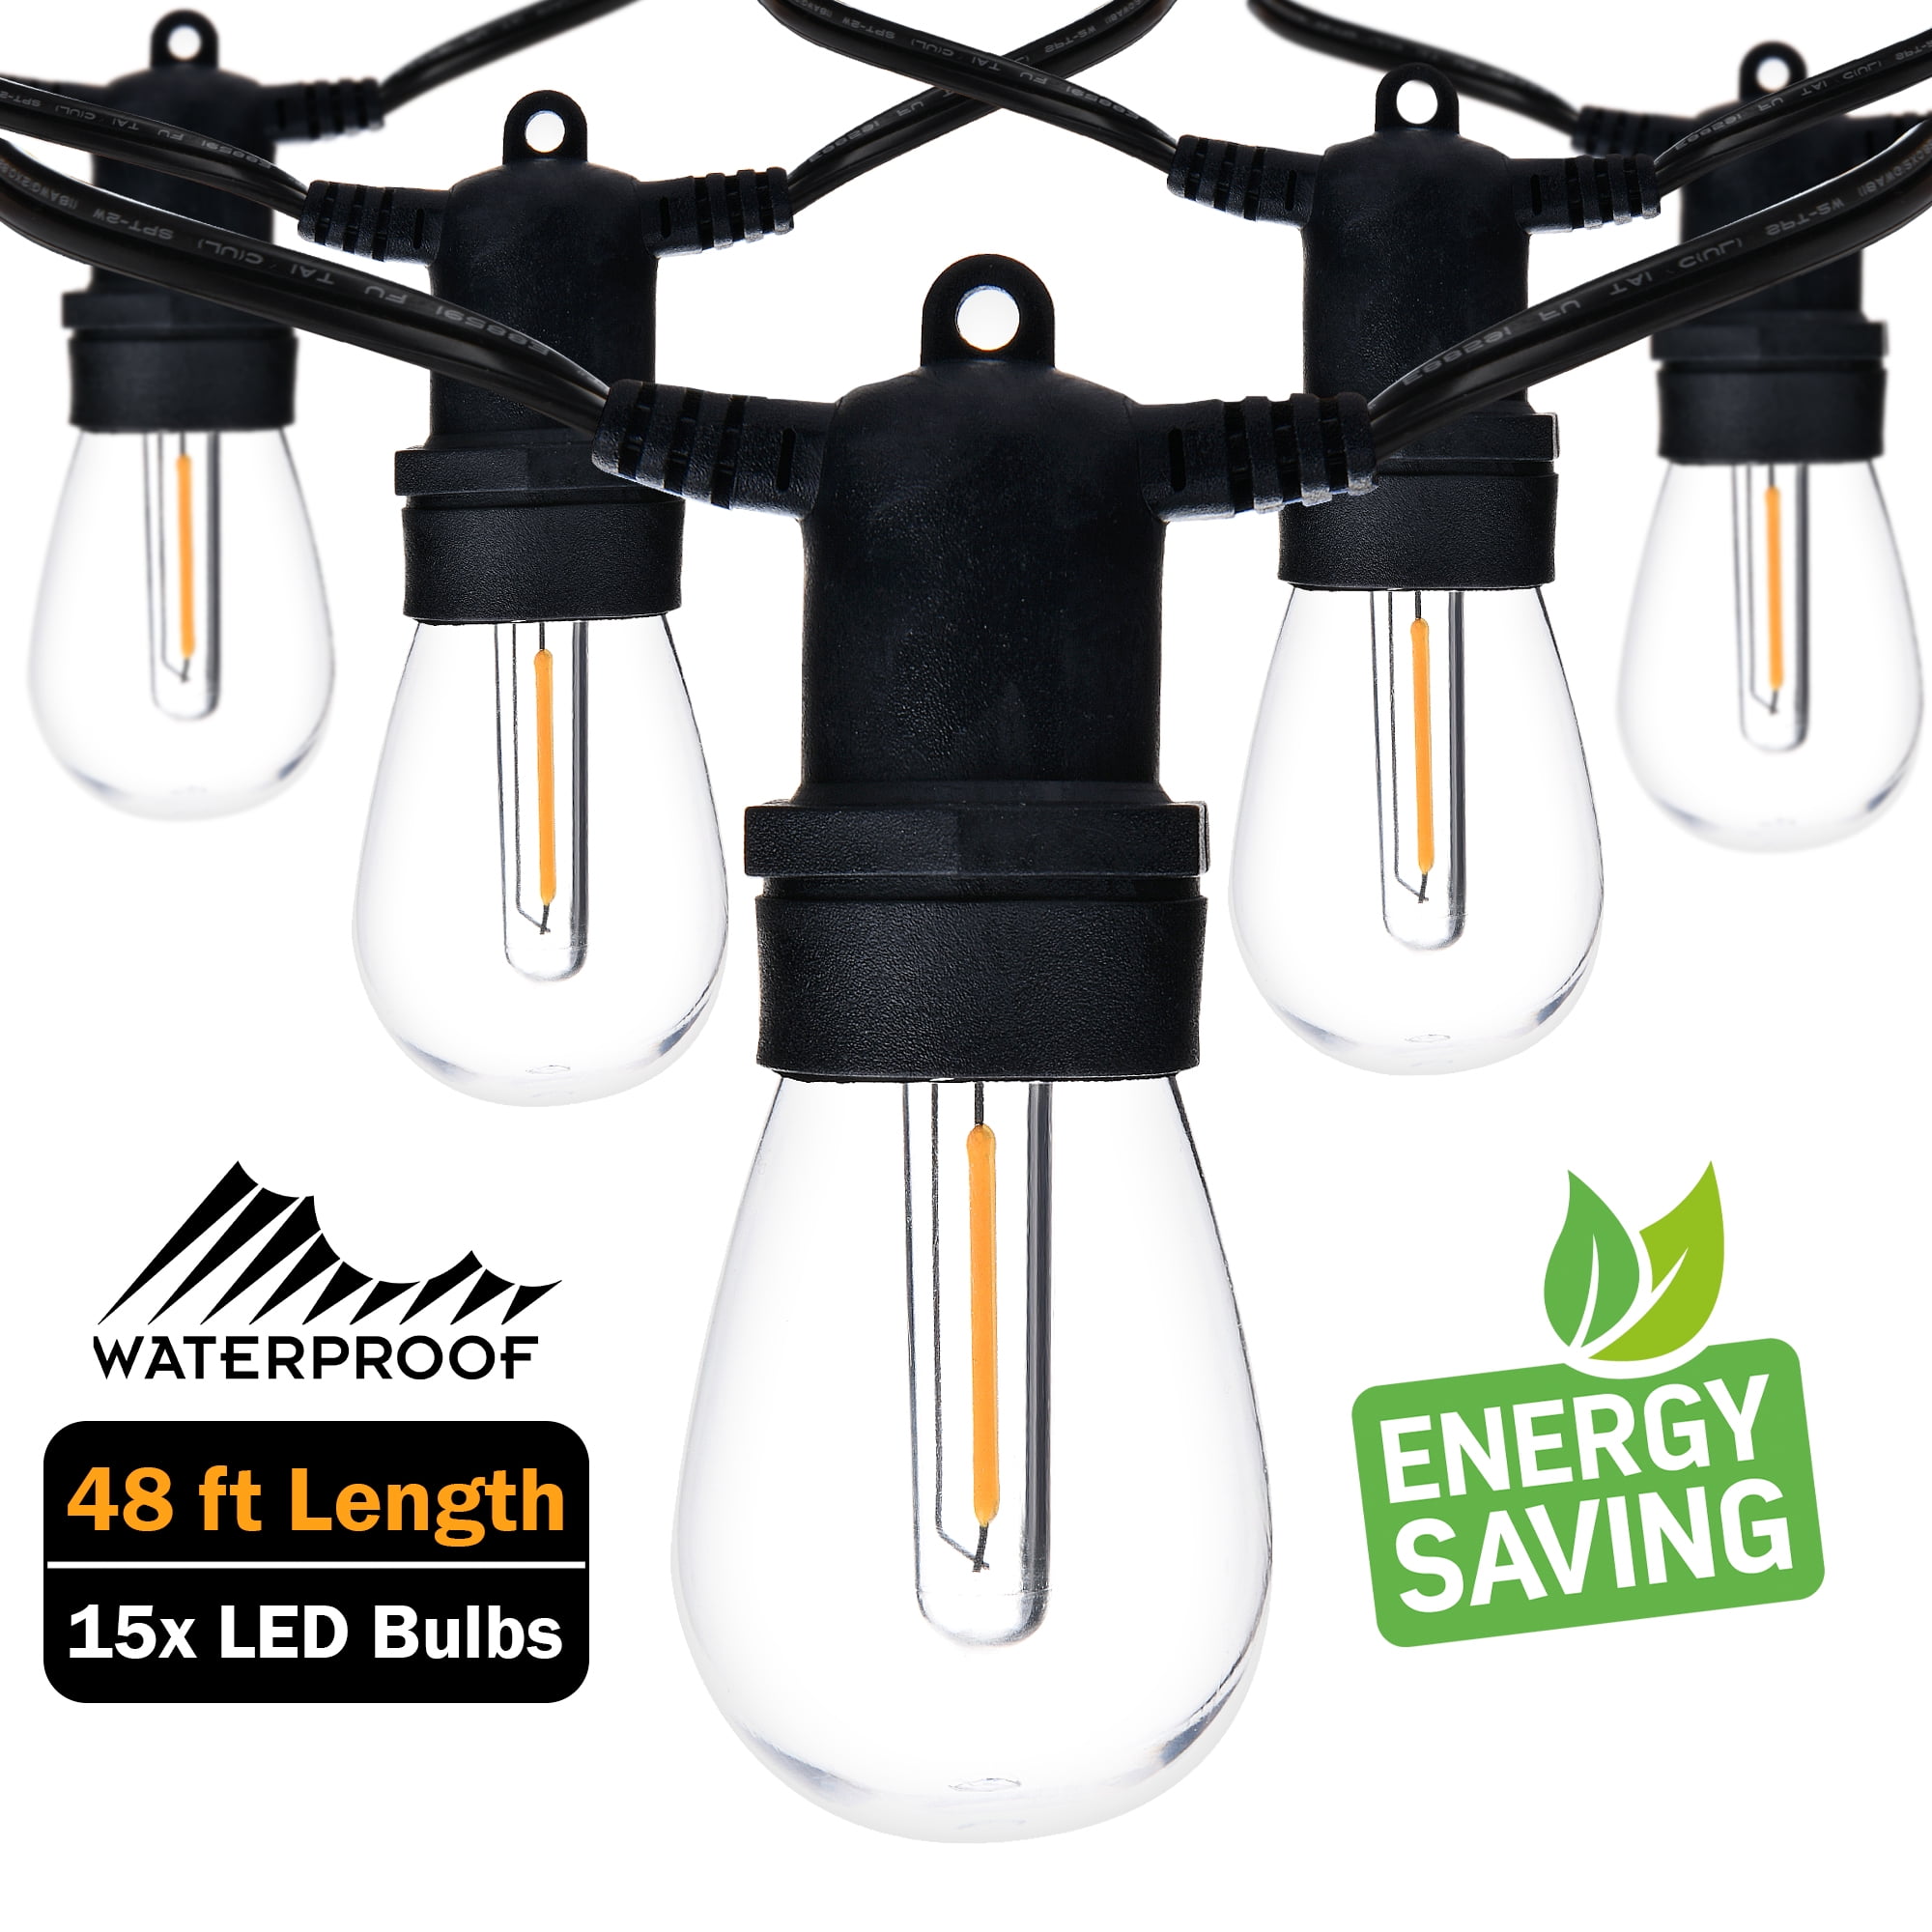 48FT Extendable LED String Lights Waterproof Indoor Outdoor Patio Garden Decor 